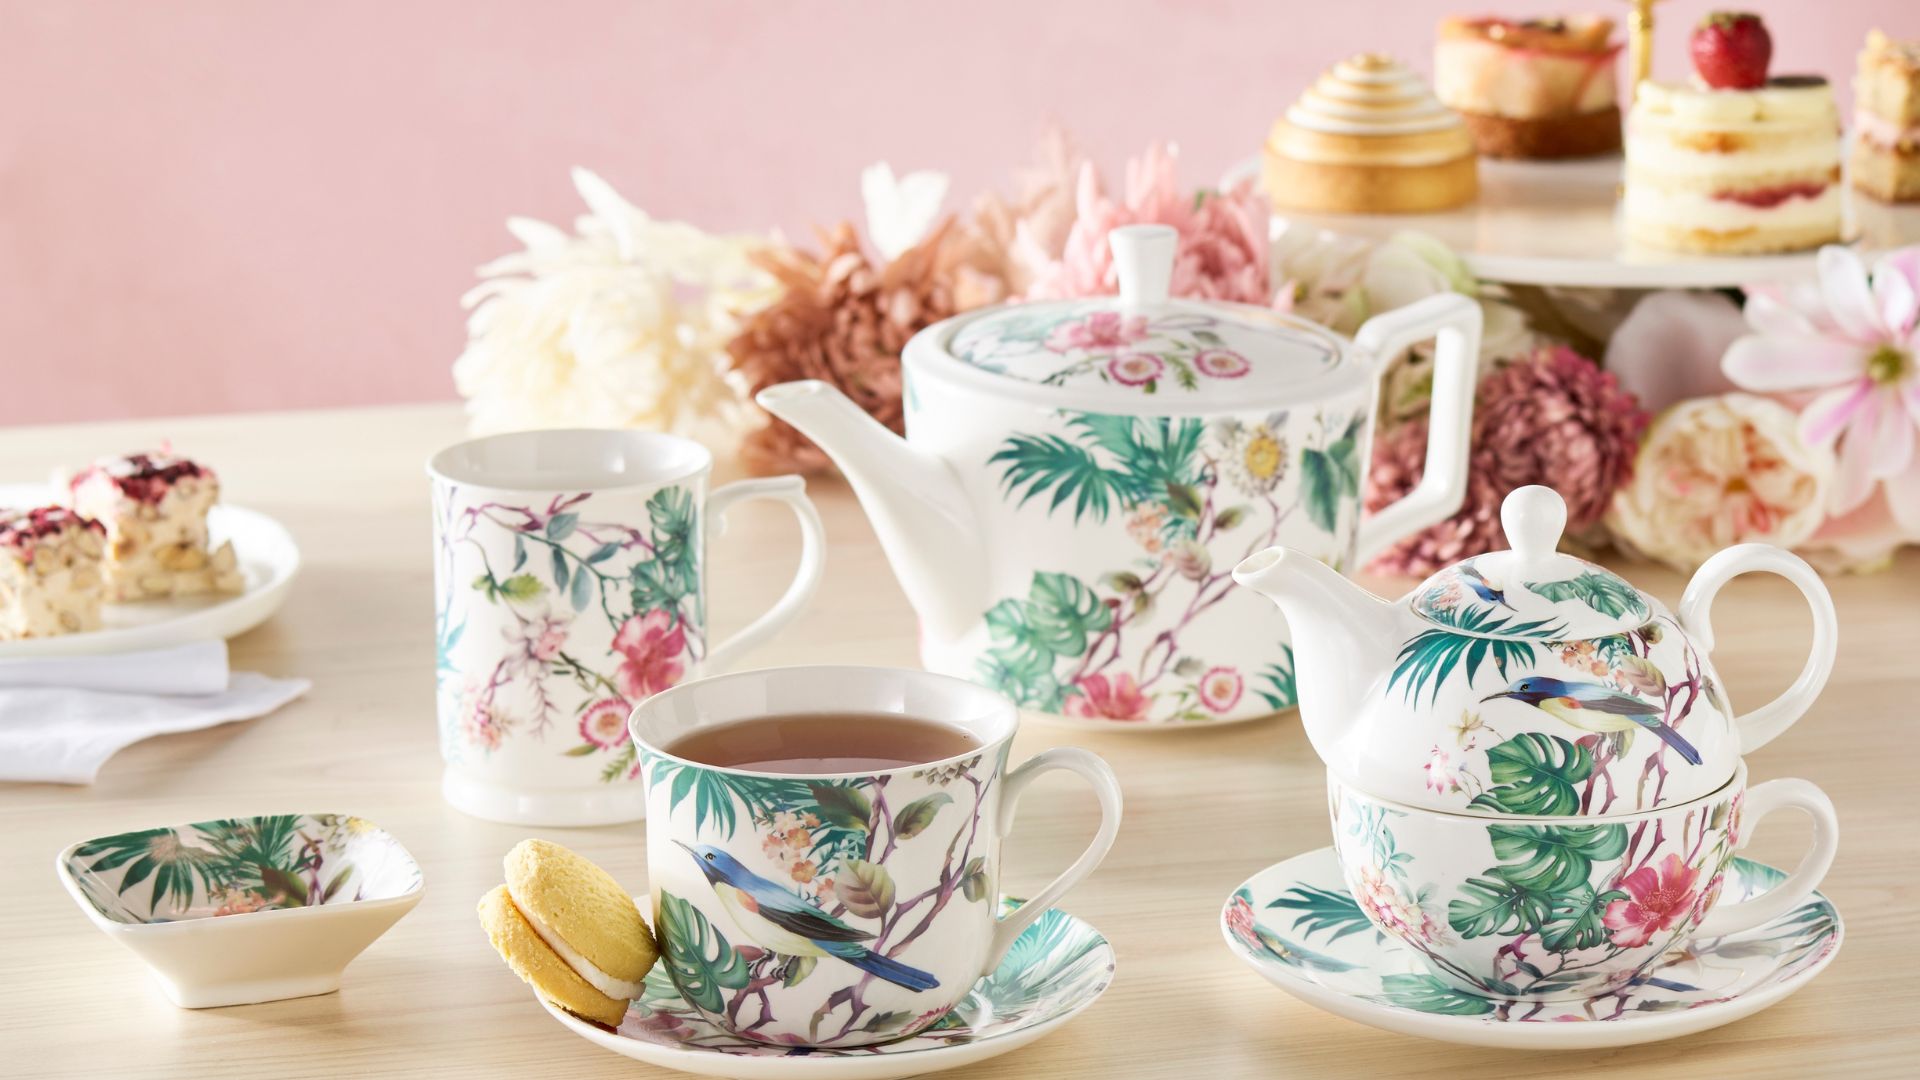 Teapot and teacup saucer set with a floral fauna design